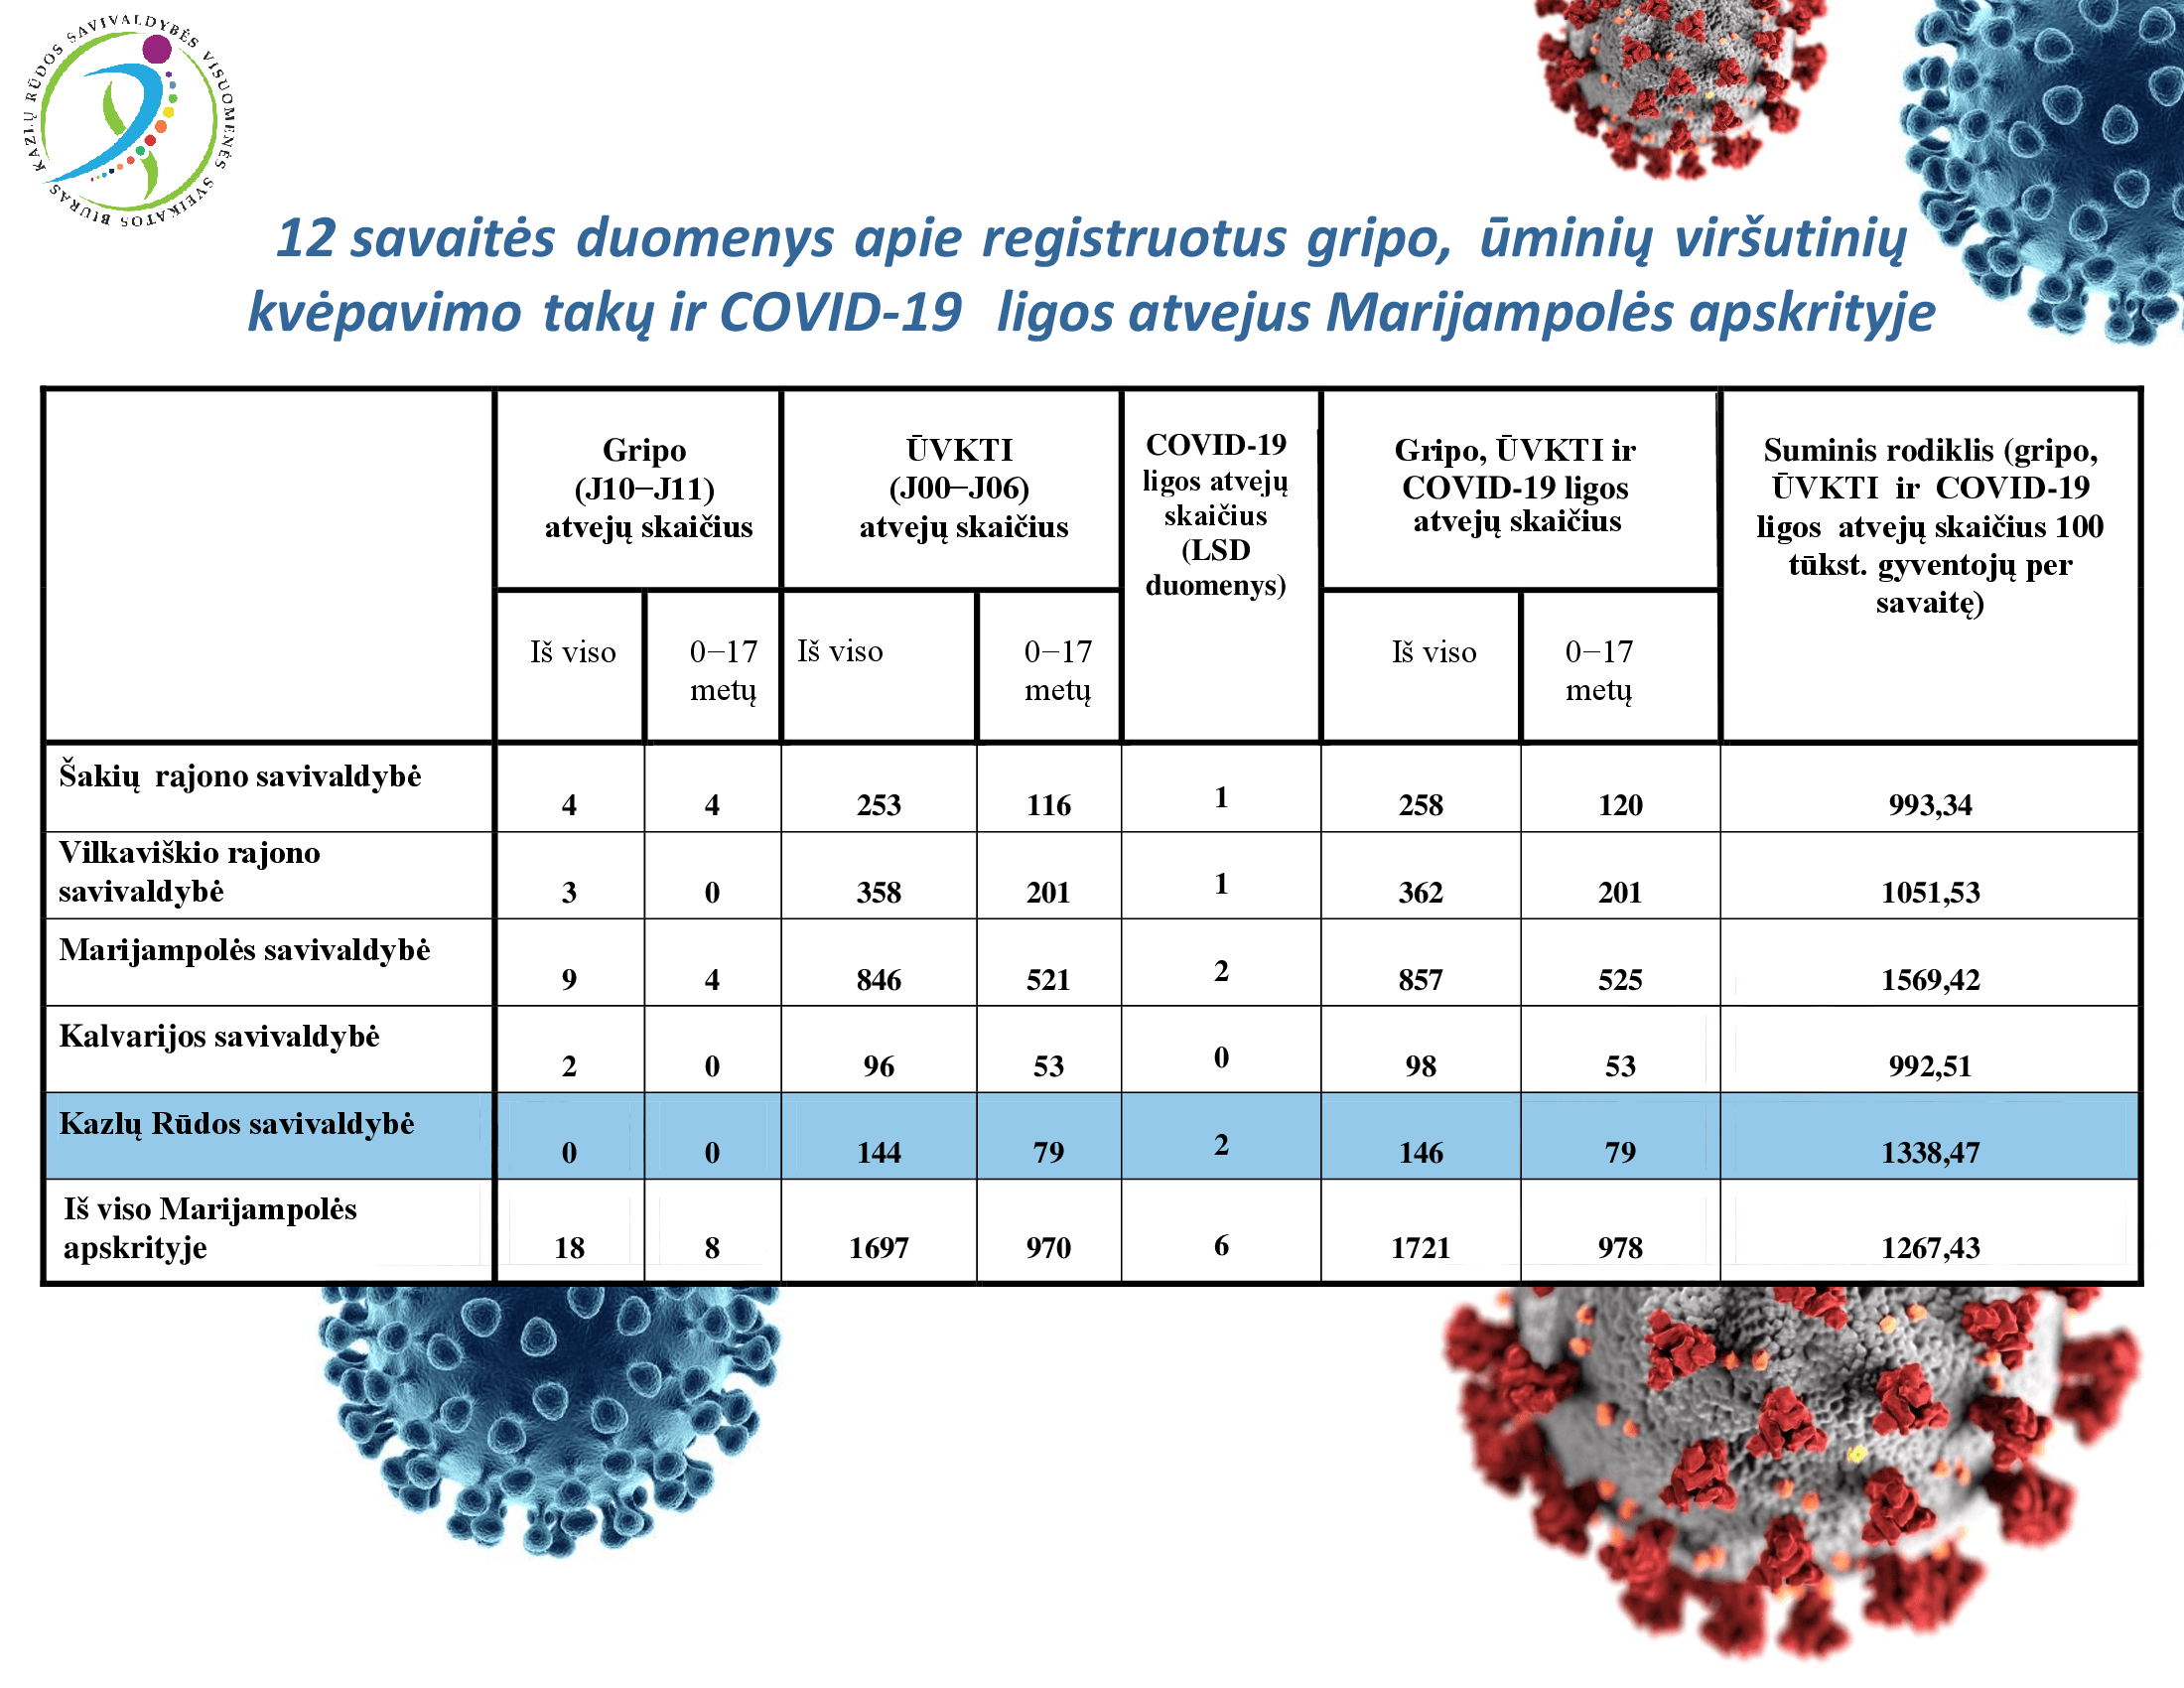 12-savaites-duomenys-apie-registruotus-gripo,-uminiu-virsutiniu-kvepavimo-taku-ir-covid-19-ligos-atvejus-marijampoles-apskrityje-